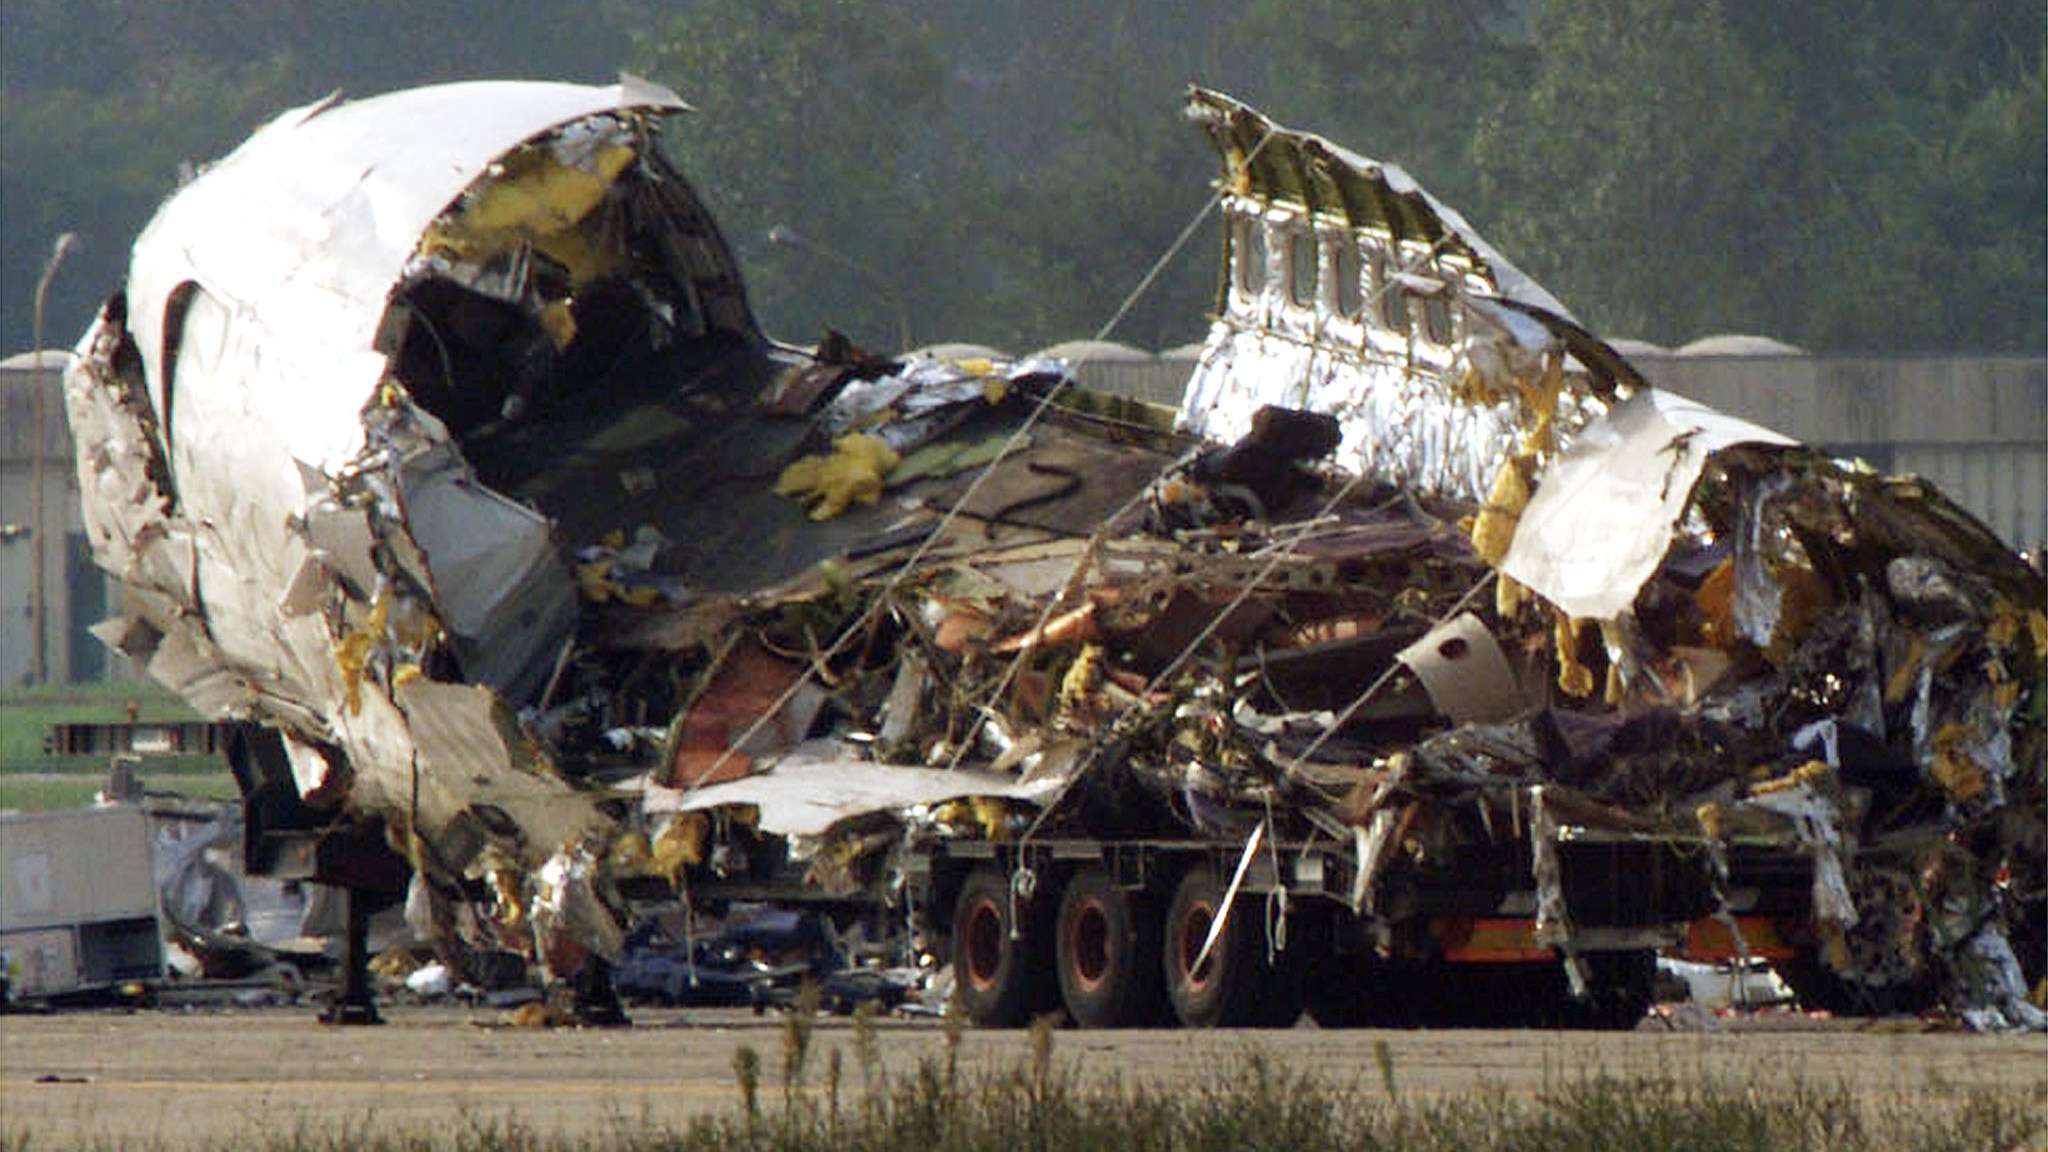 Ventuno anni fa il disastro aereo di Linate, celebrata oggi la prima "Giornata per non dimenticare"